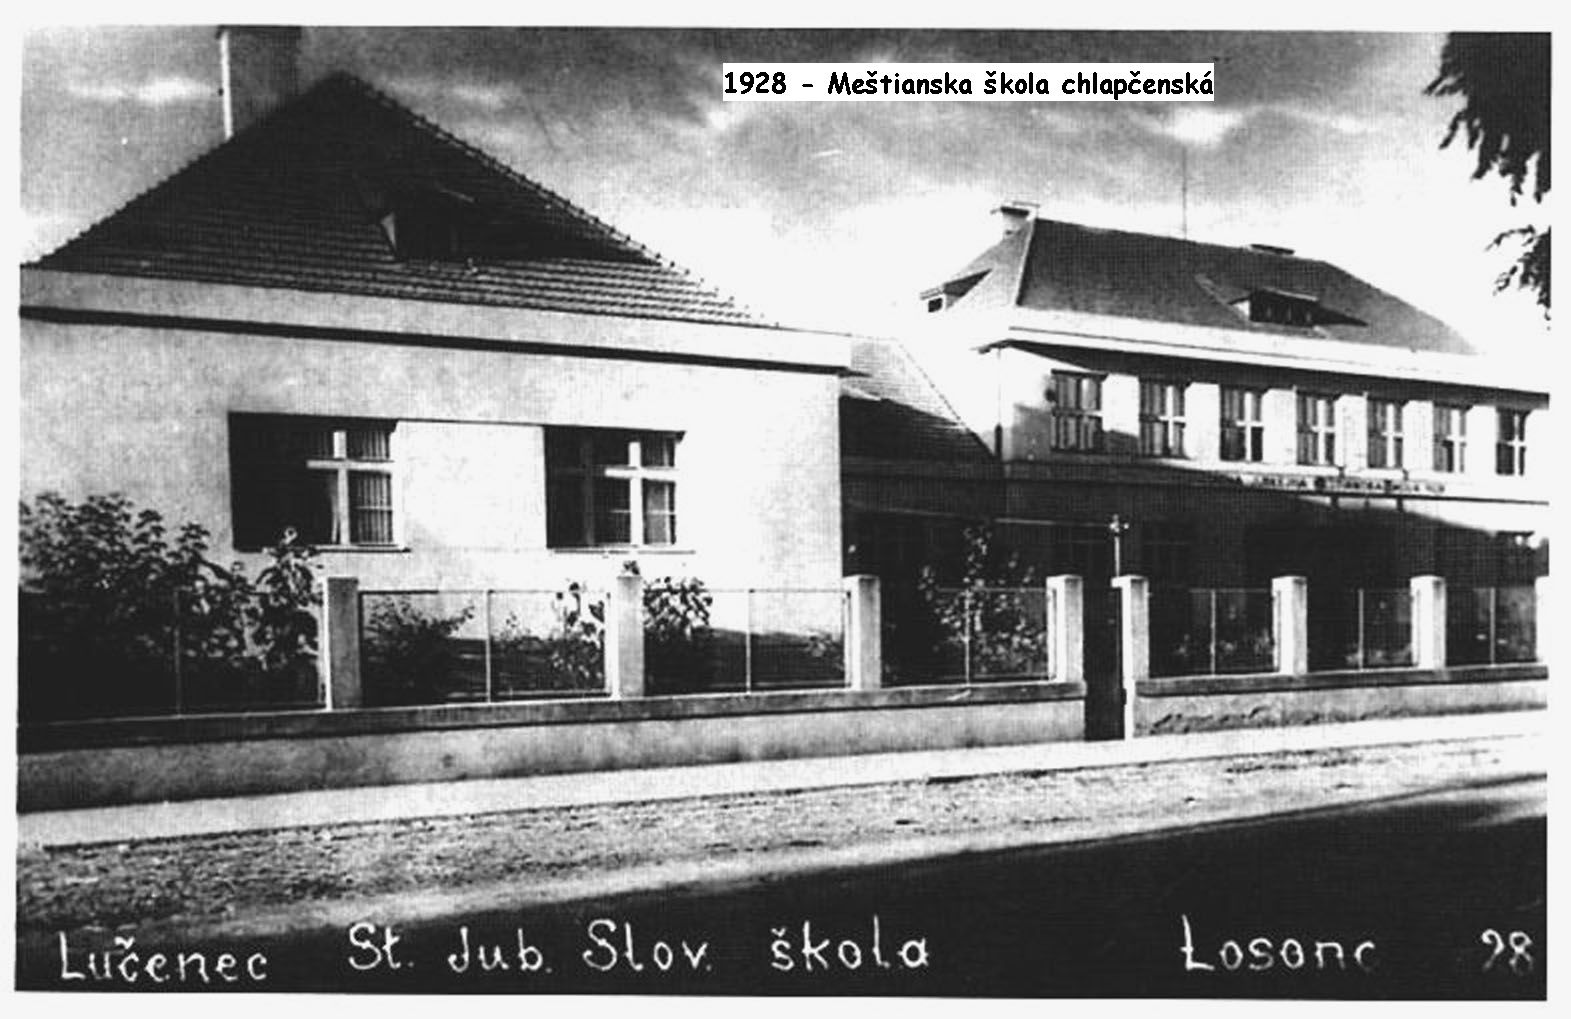 1928 - Meštianska škola chlapčenská